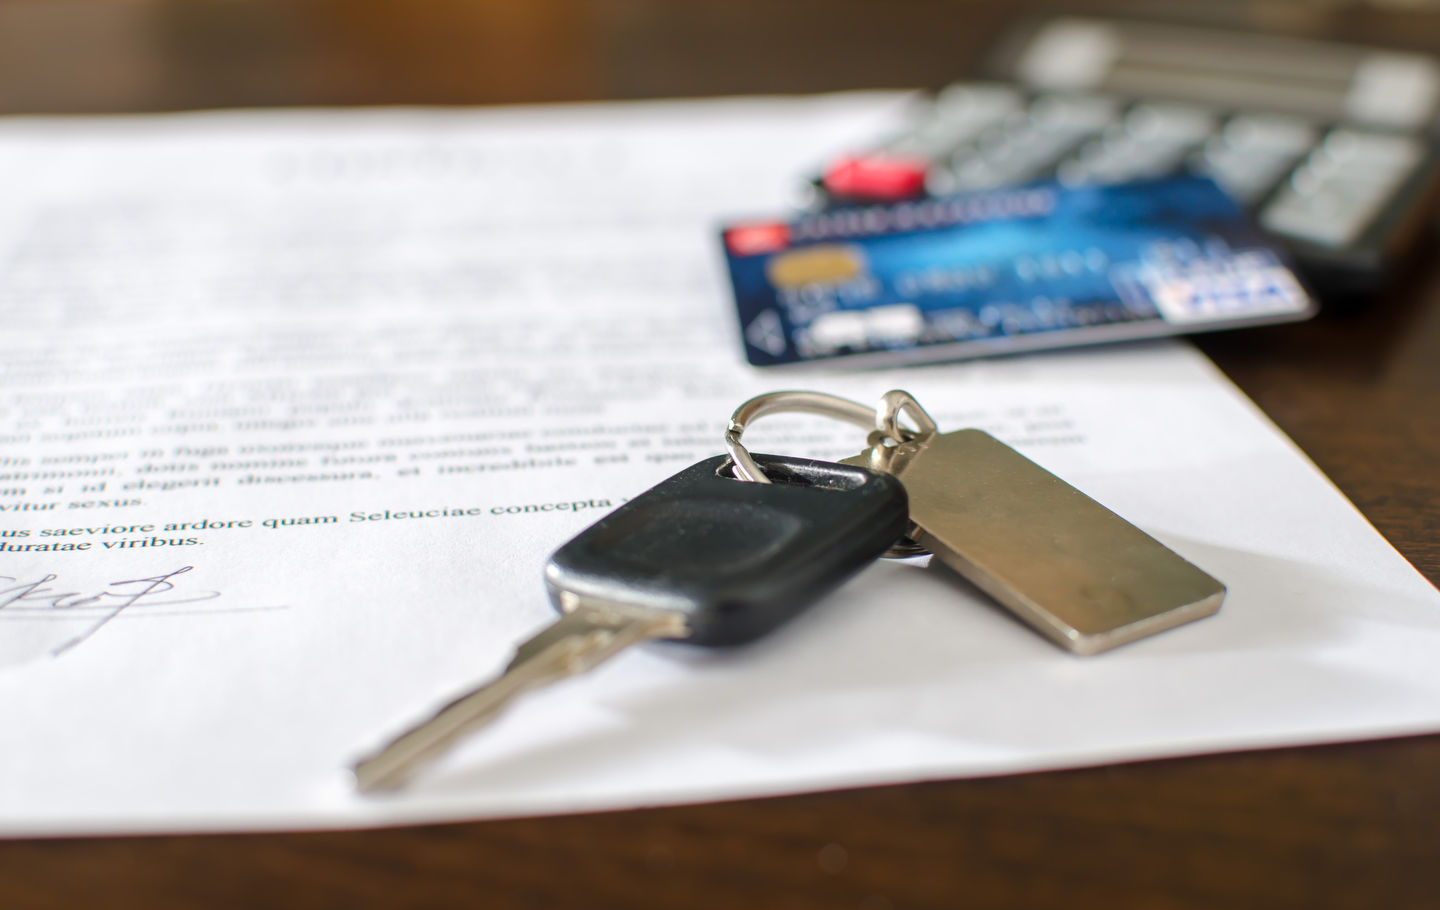 Trois conseils pour obtenir le prêt auto dont vous avez besoin même avec un mauvais crédit